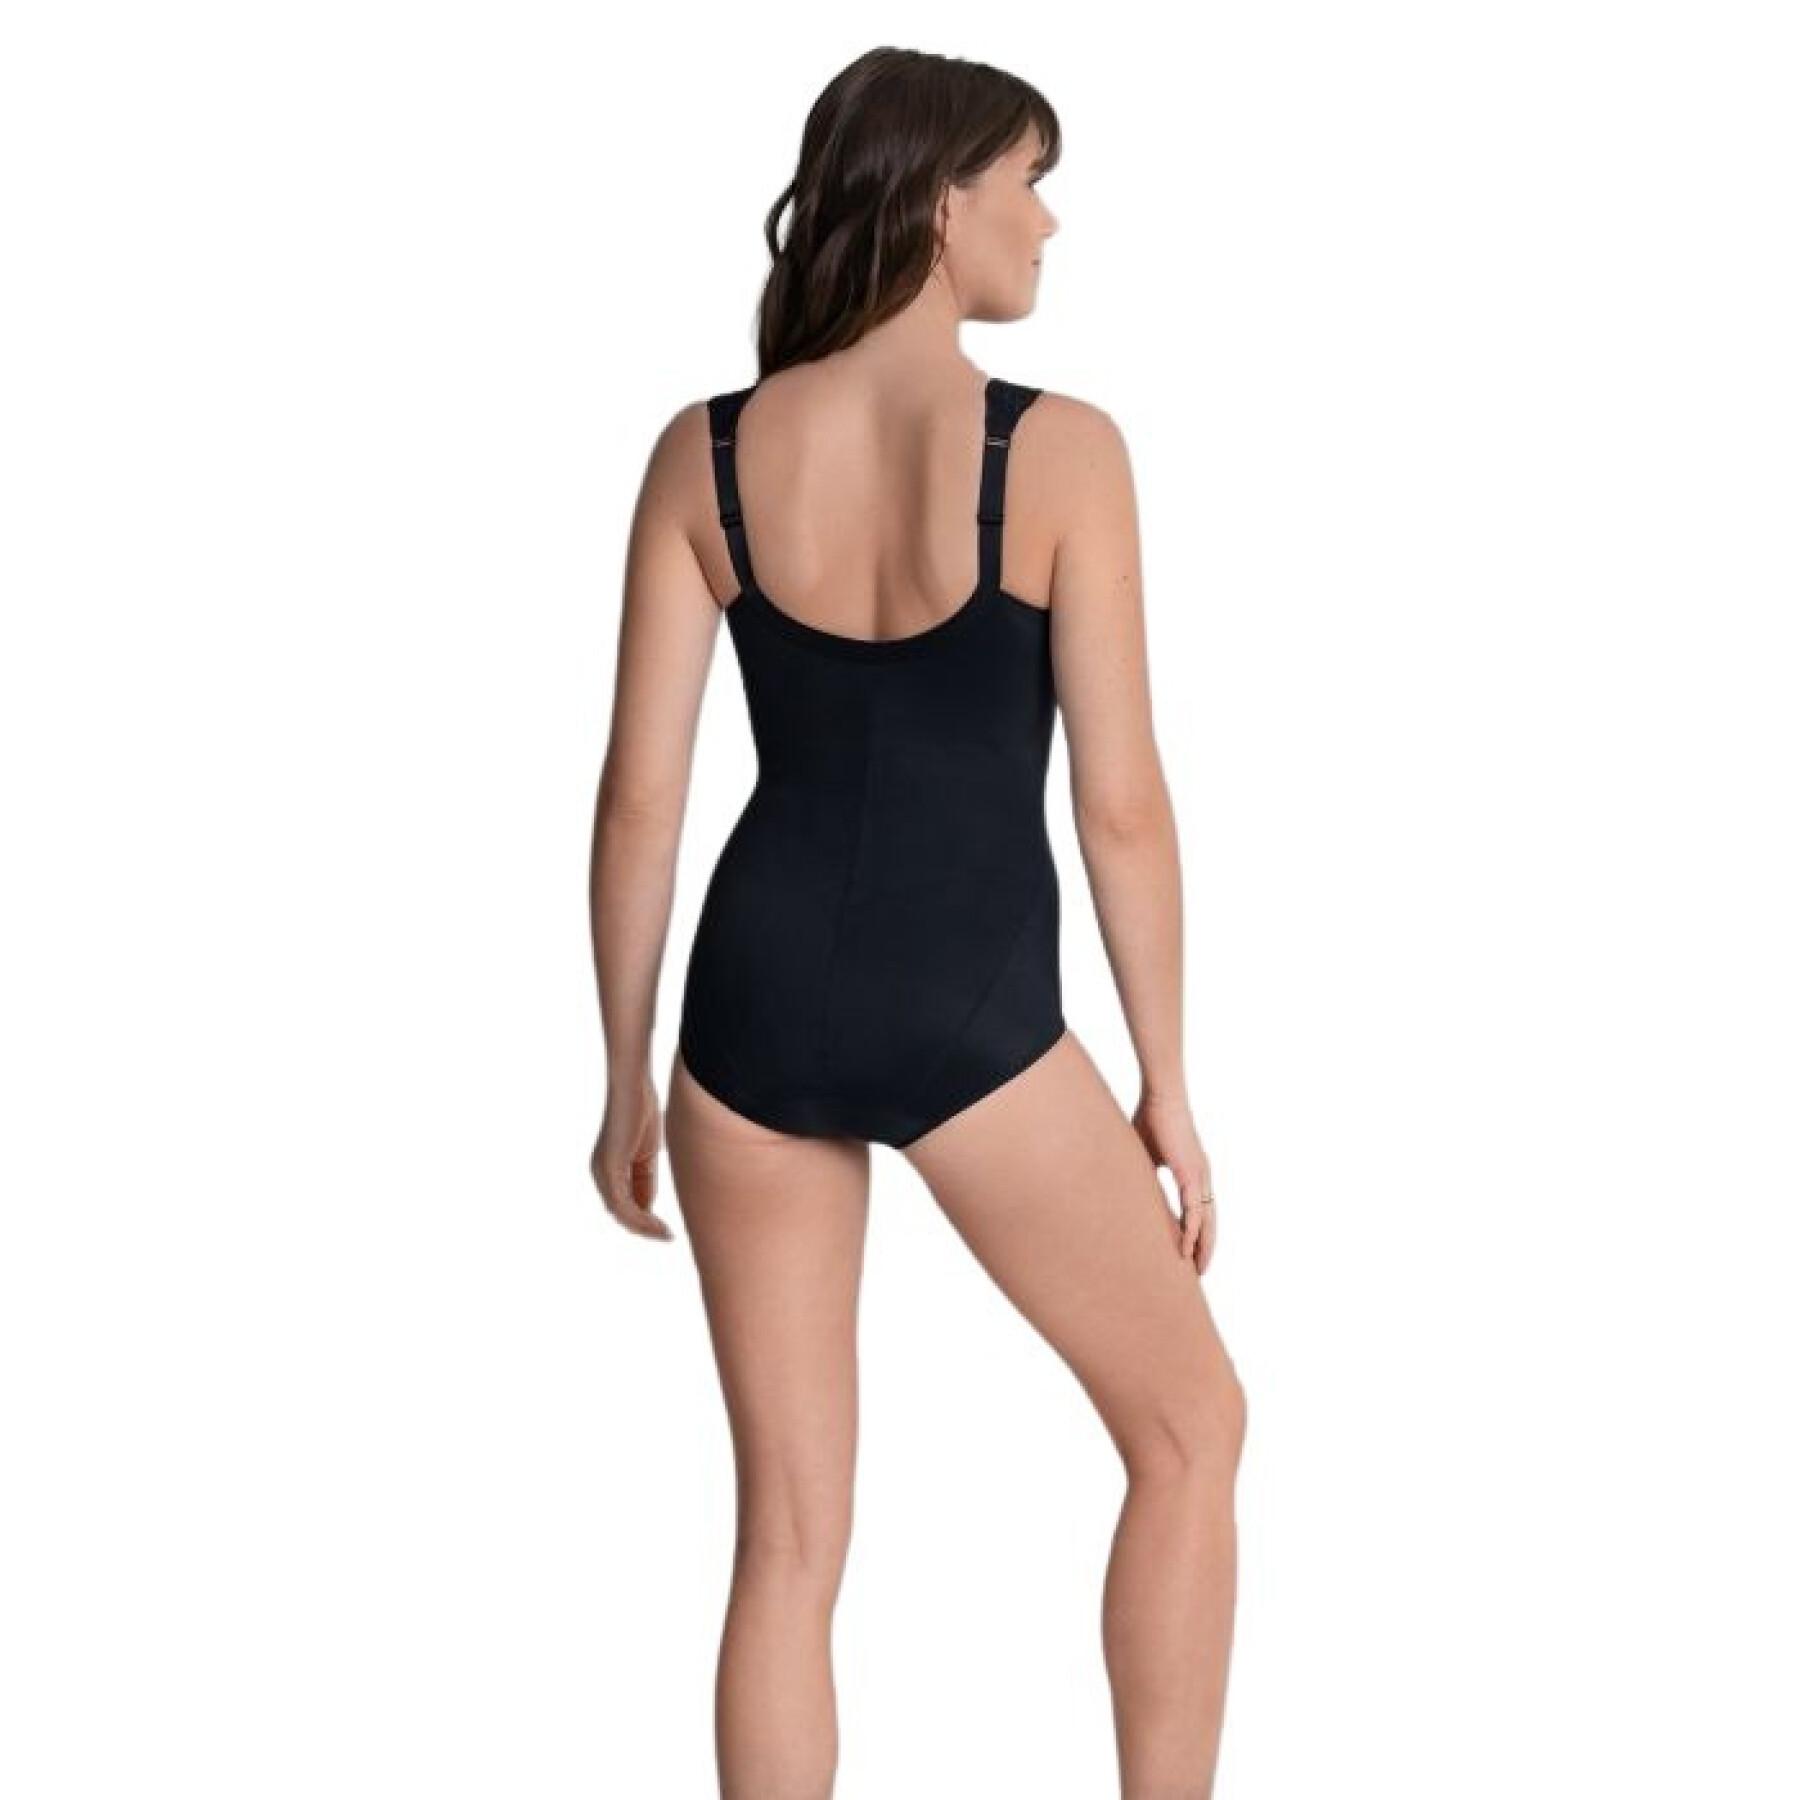 Women's topcomfort suit Anita microenergen